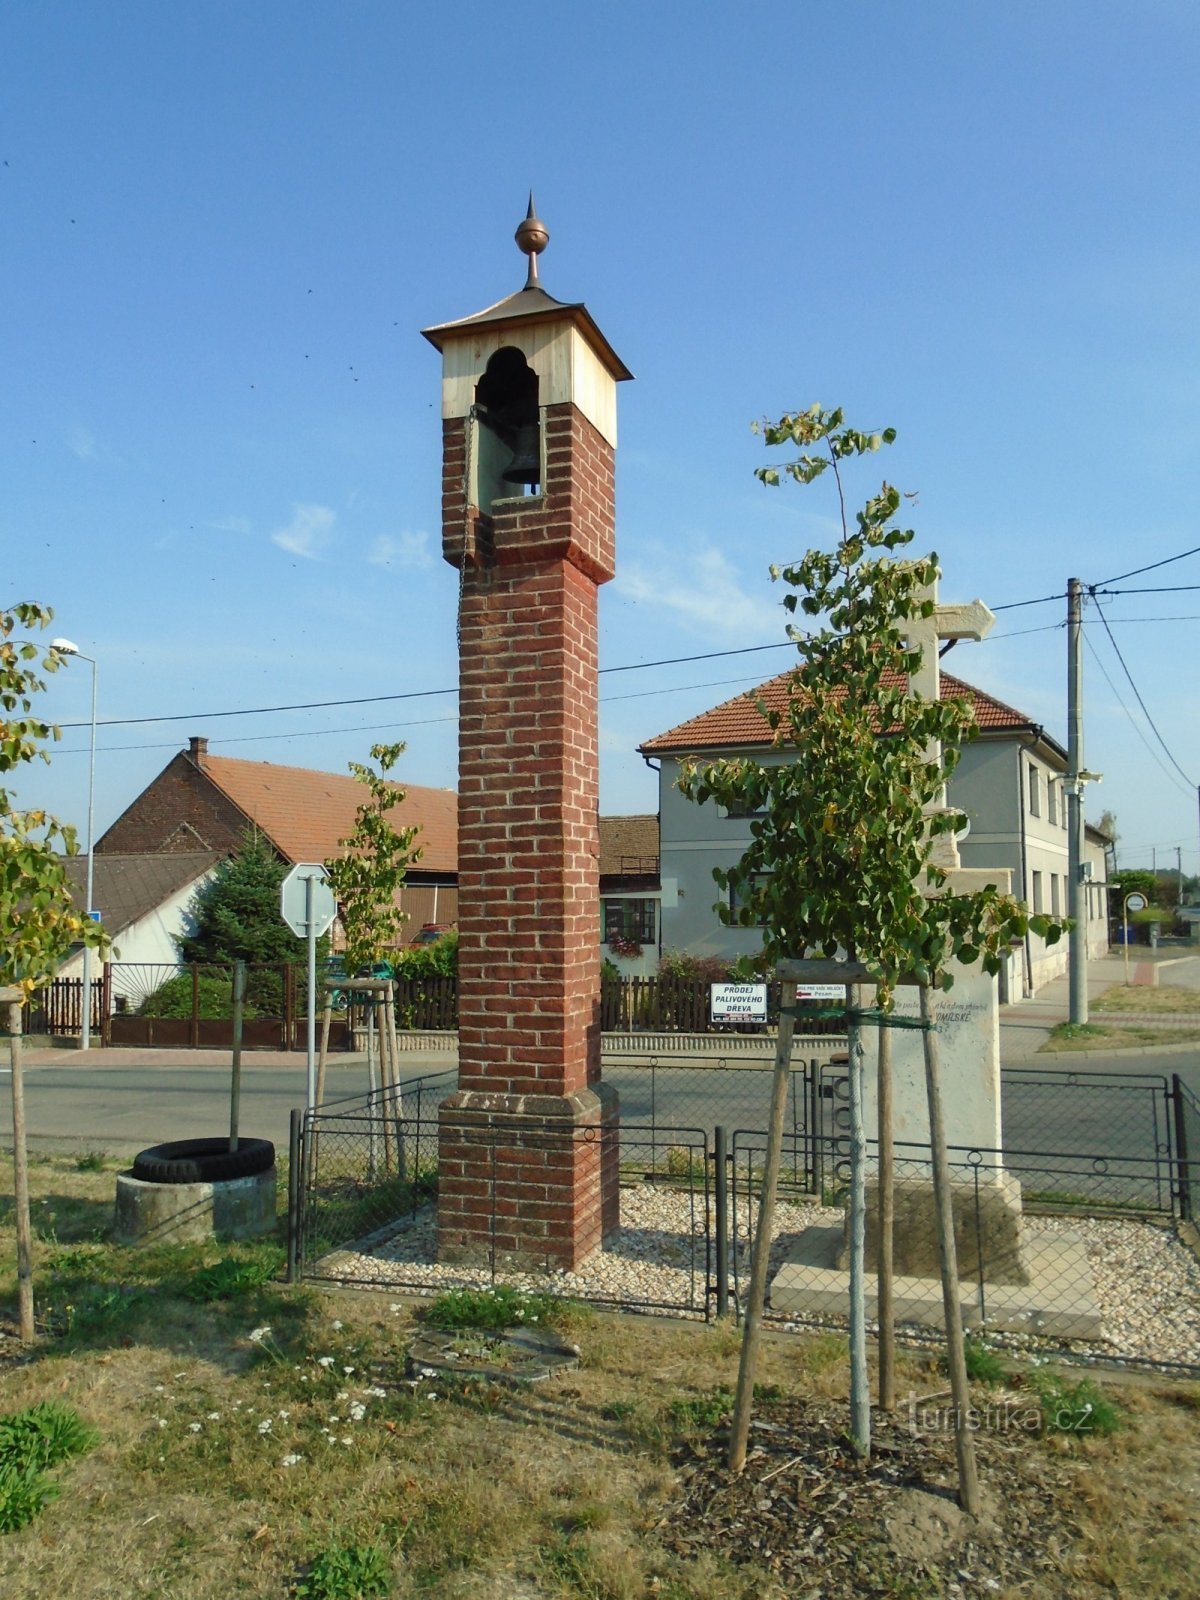 钟楼和十字架 (Homyle)